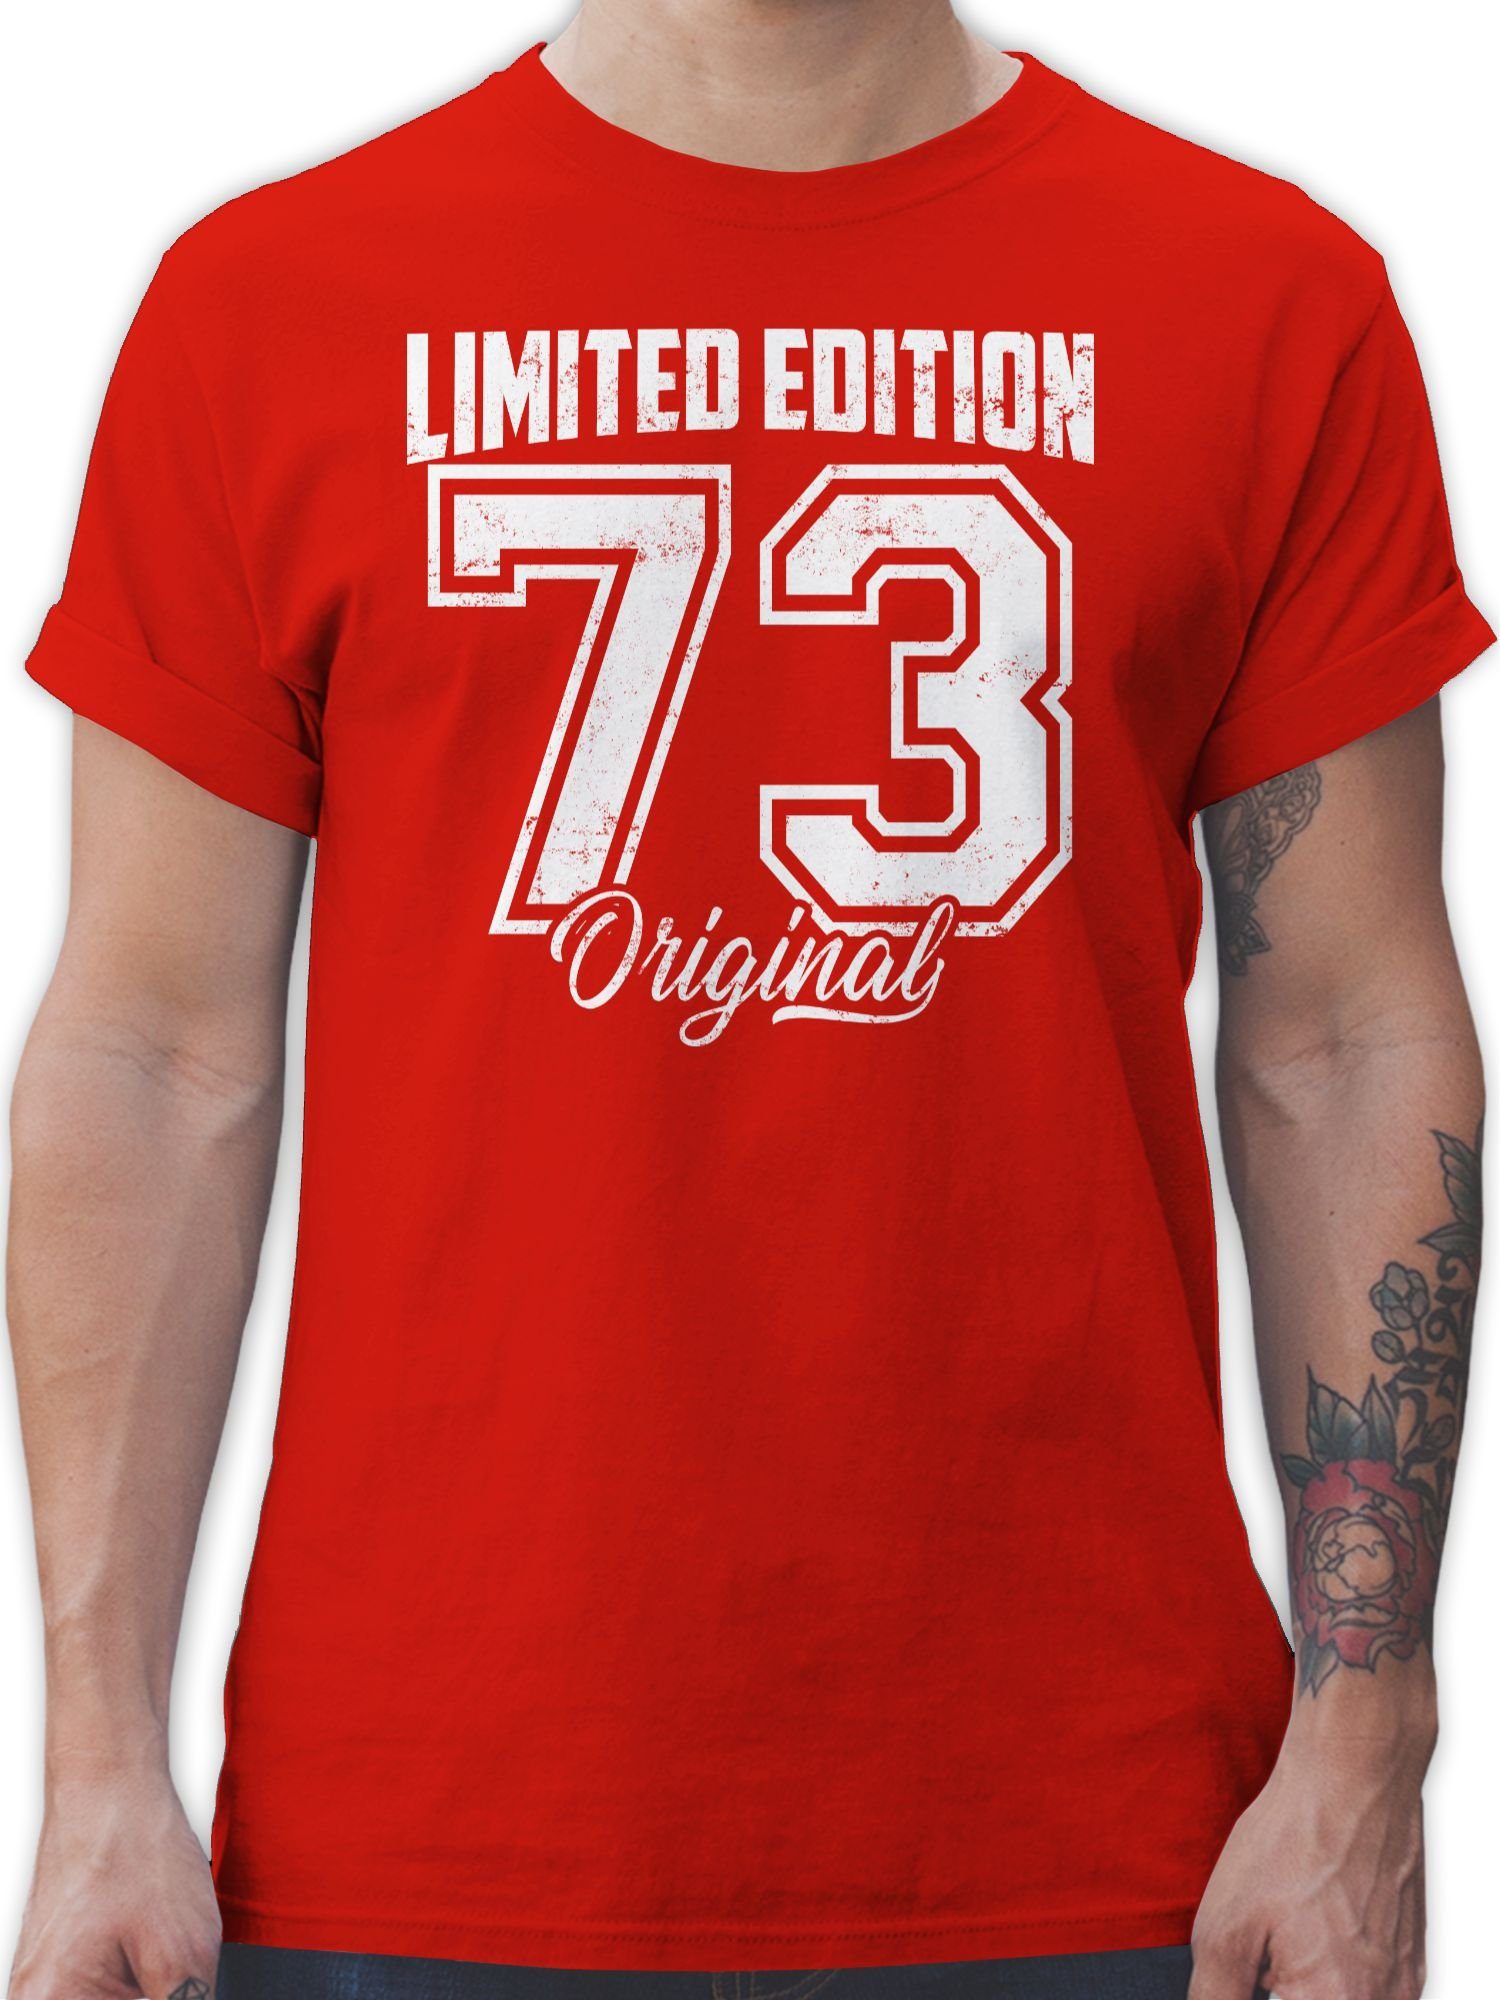 Geburtstag Edition Fünfzigster Shirtracer 50. 1973 Rot Weiß Original 01 Limited T-Shirt Vintage